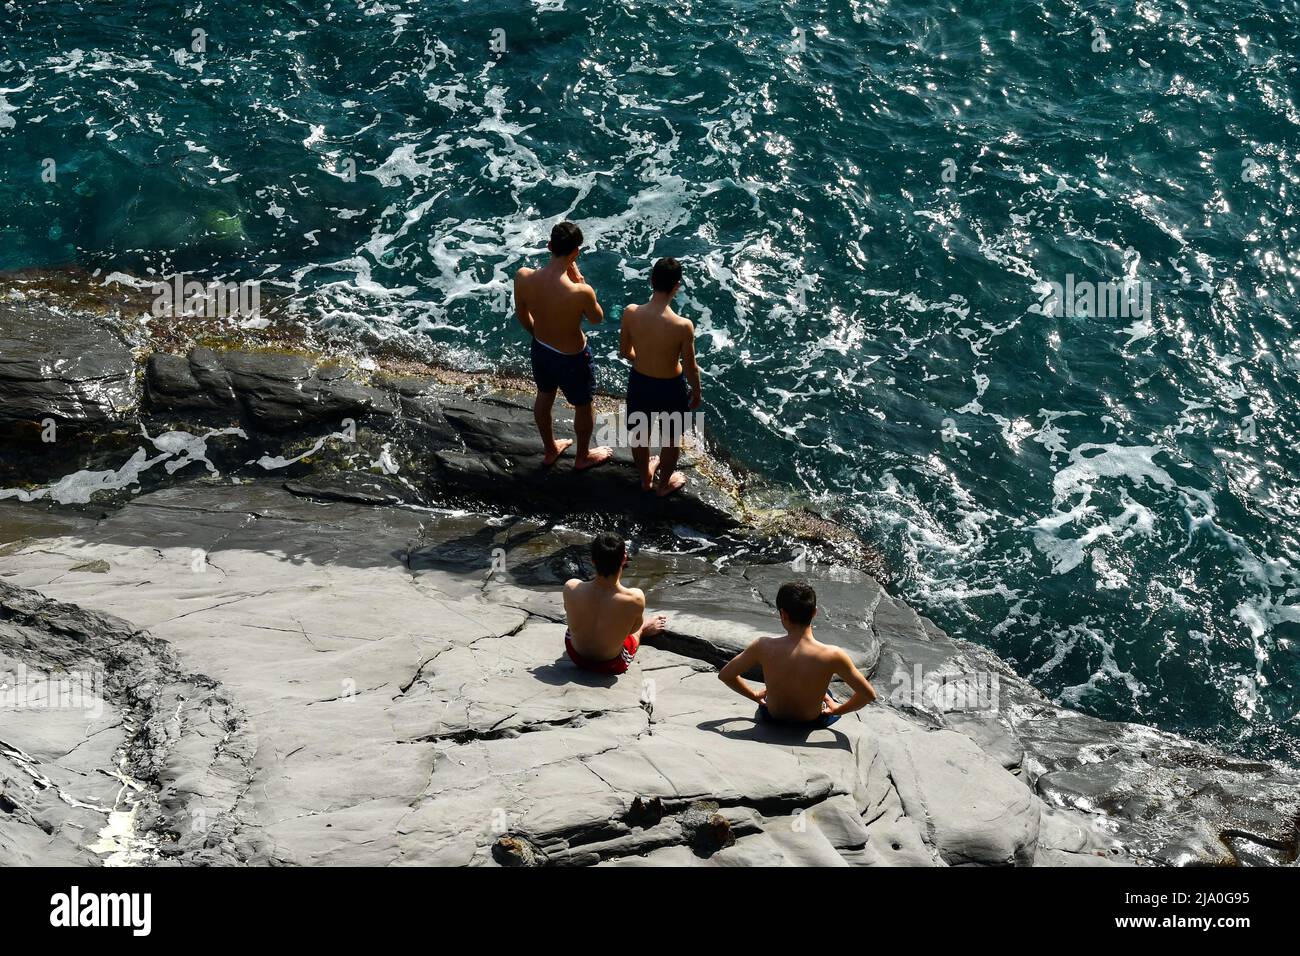 Vista su una scogliera della passeggiata di Nervi con un piccolo gruppo di adolescenti (circa 16-17 anni) che prendono il sole sulla riva, Genova, Liguria, Italia Foto Stock